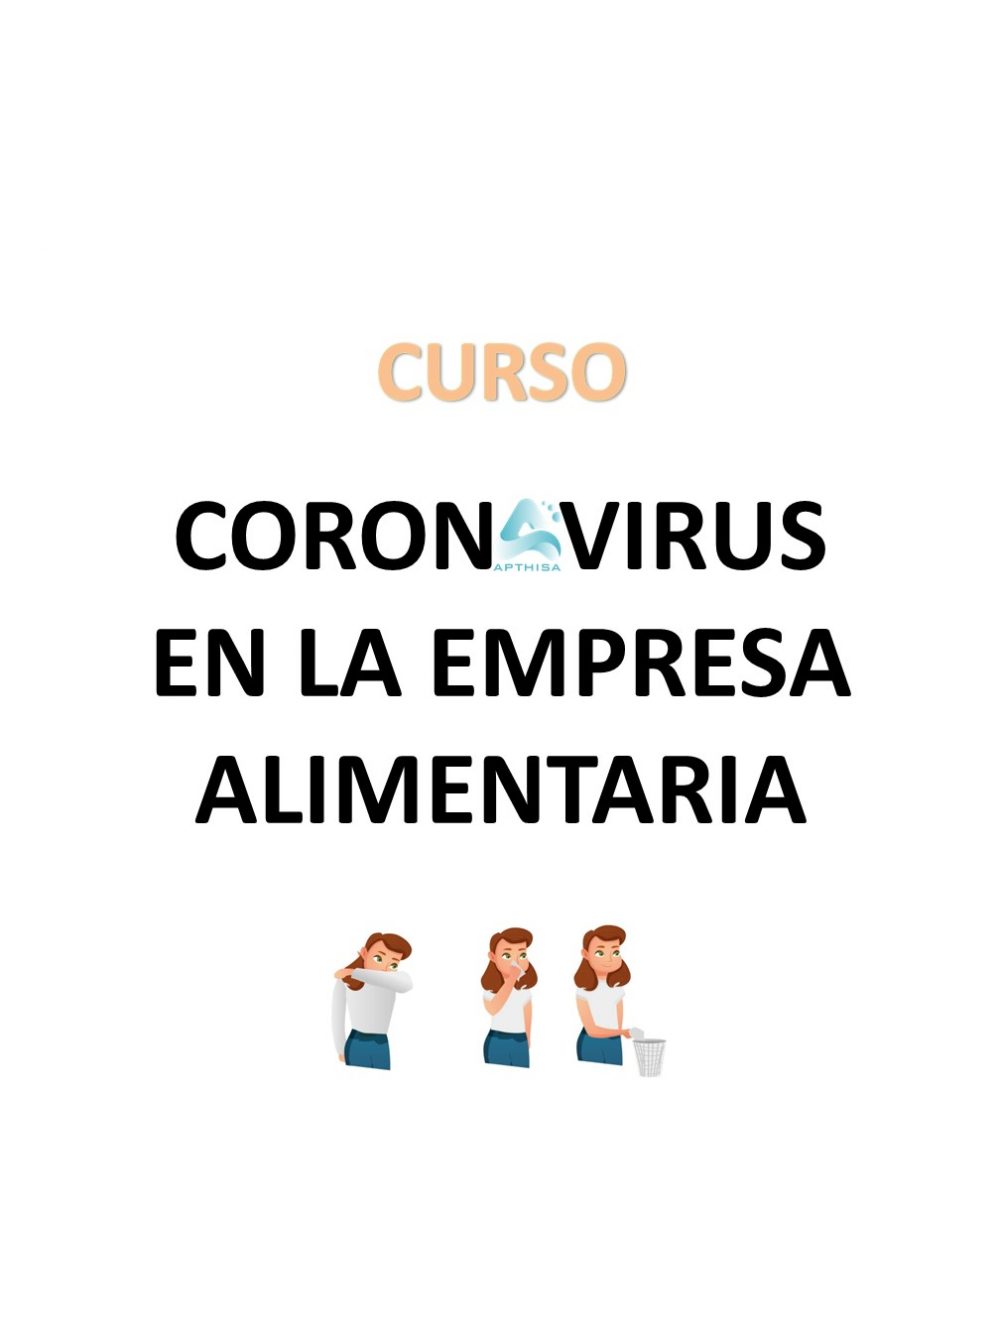 Cartel Curso Coronavirus